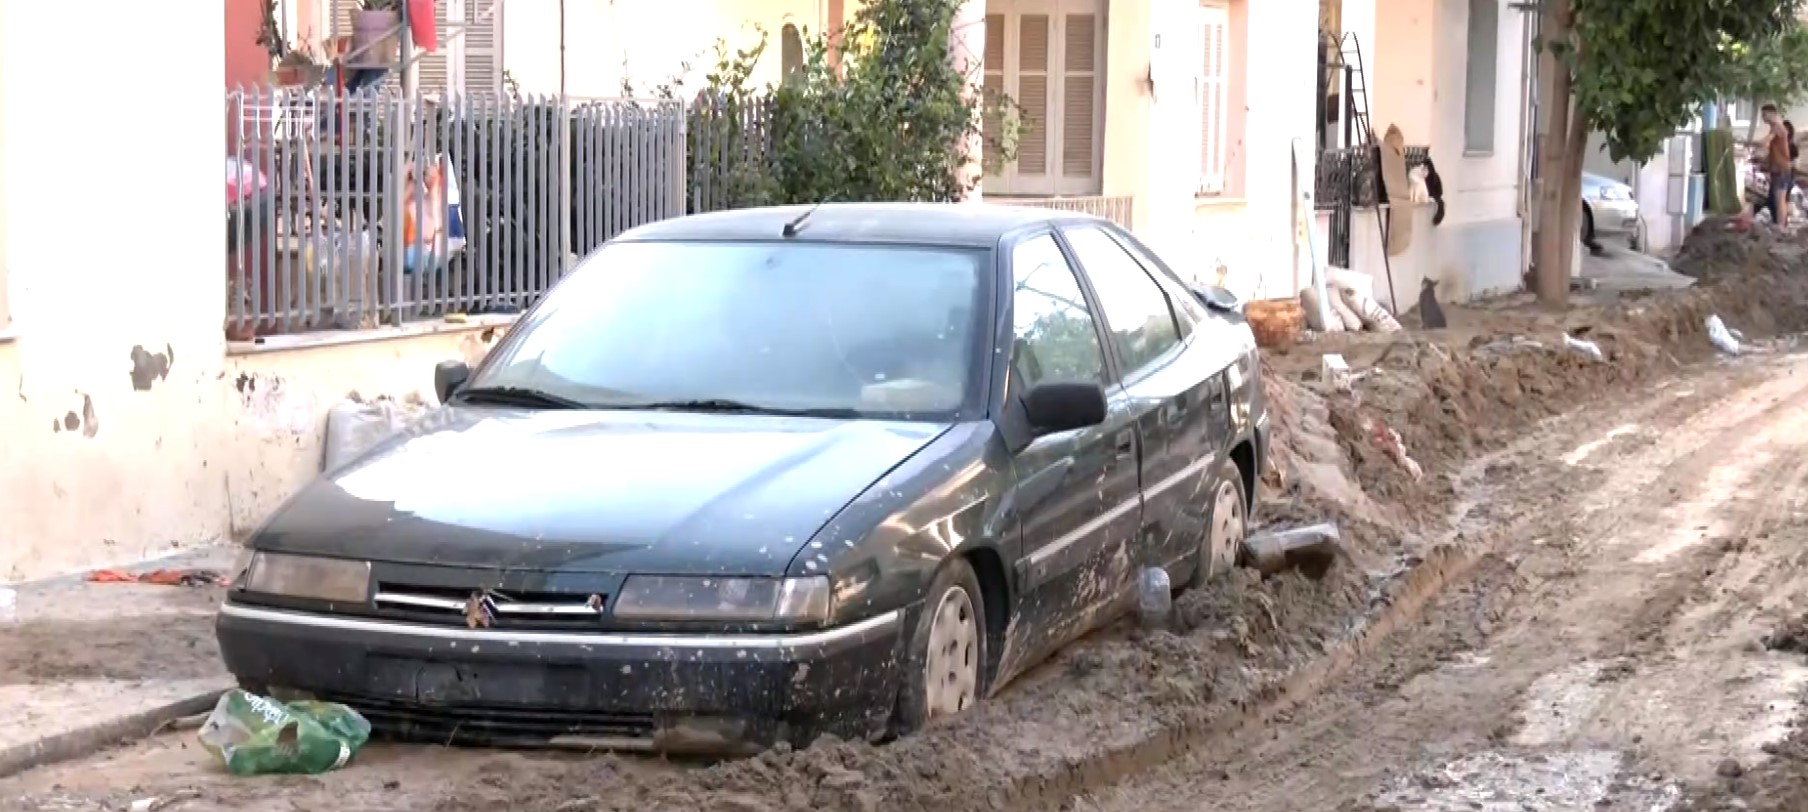 Θεσσαλία: Τα αυτοκίνητα που πλημμύρισαν είναι κατά 99% άχρηστα